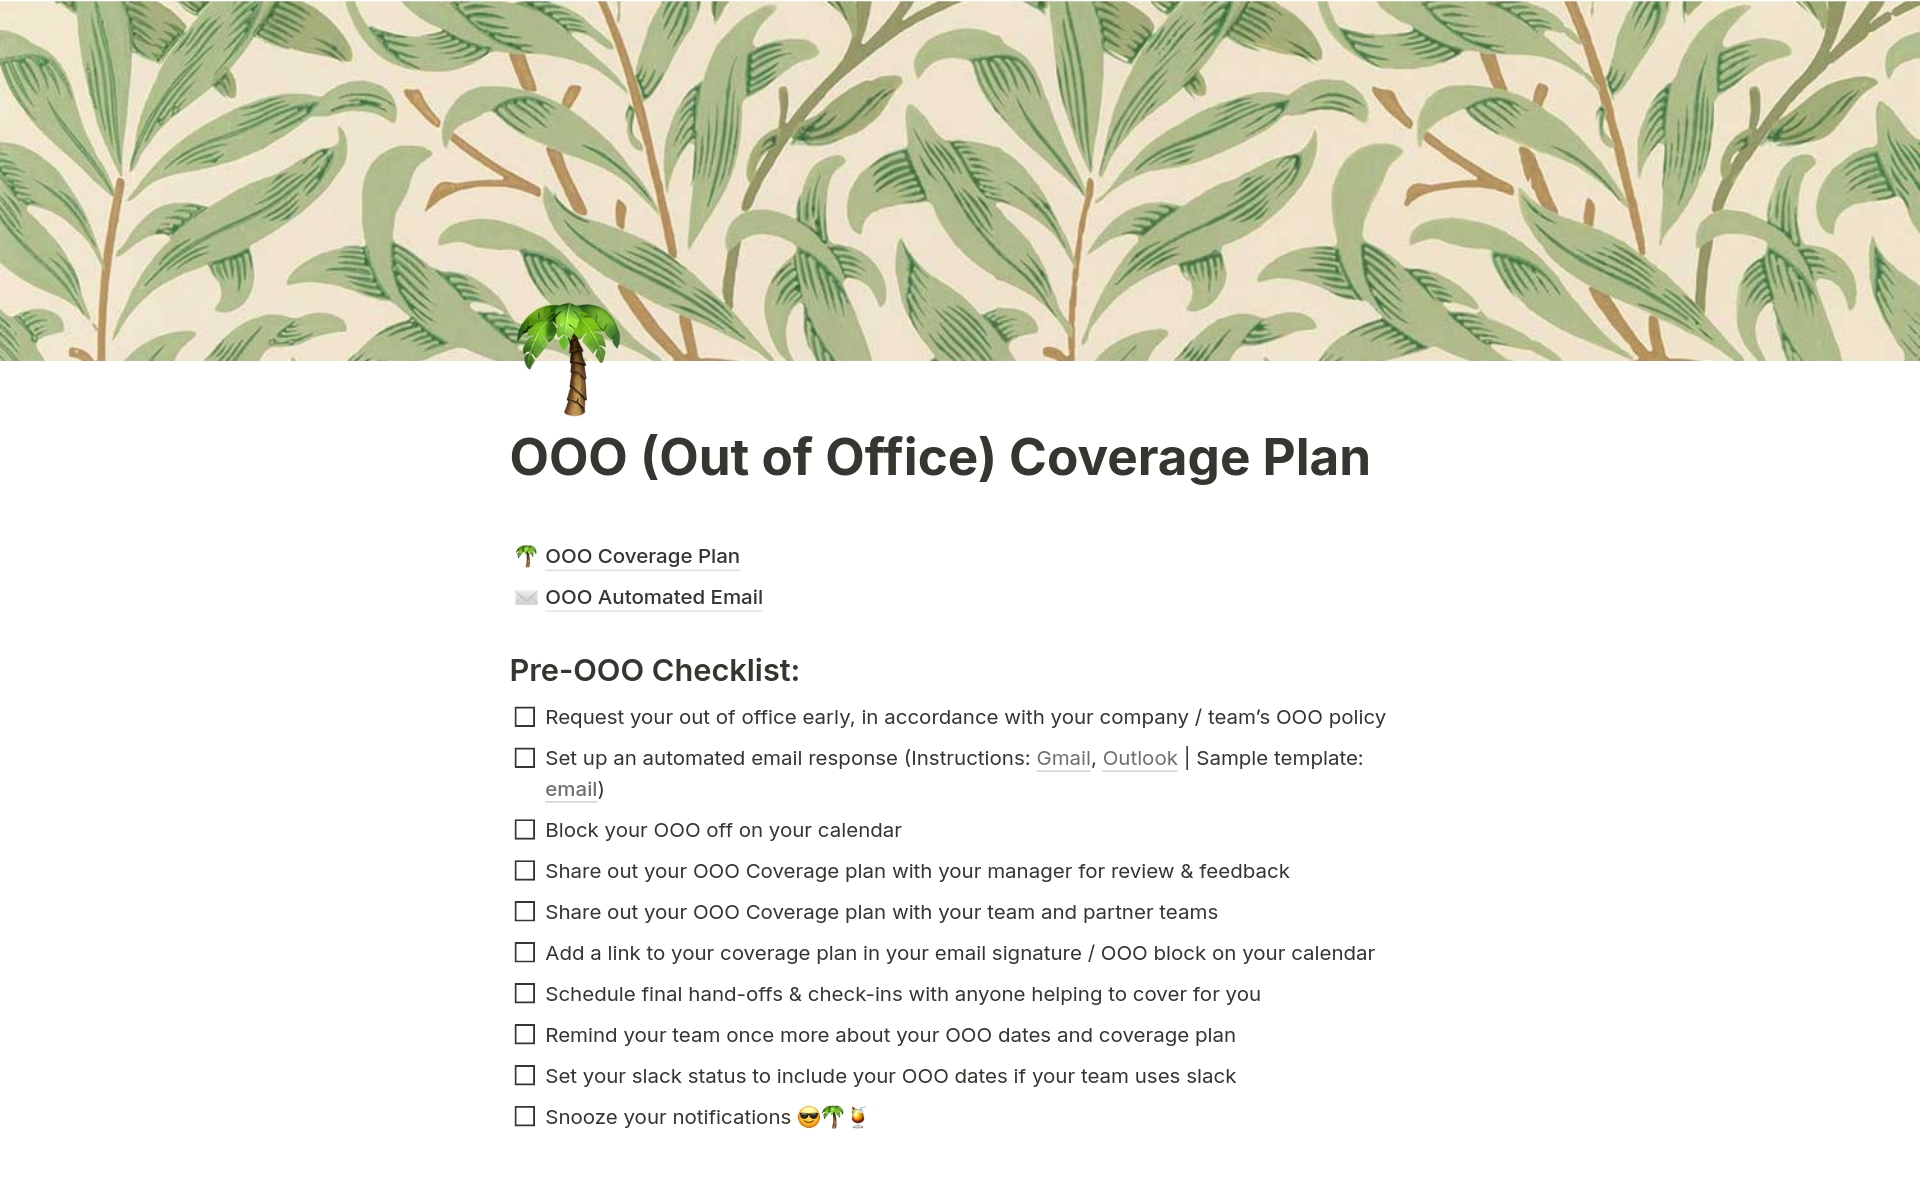 Vista previa de una plantilla para OOO (Out of Office) Coverage Plan